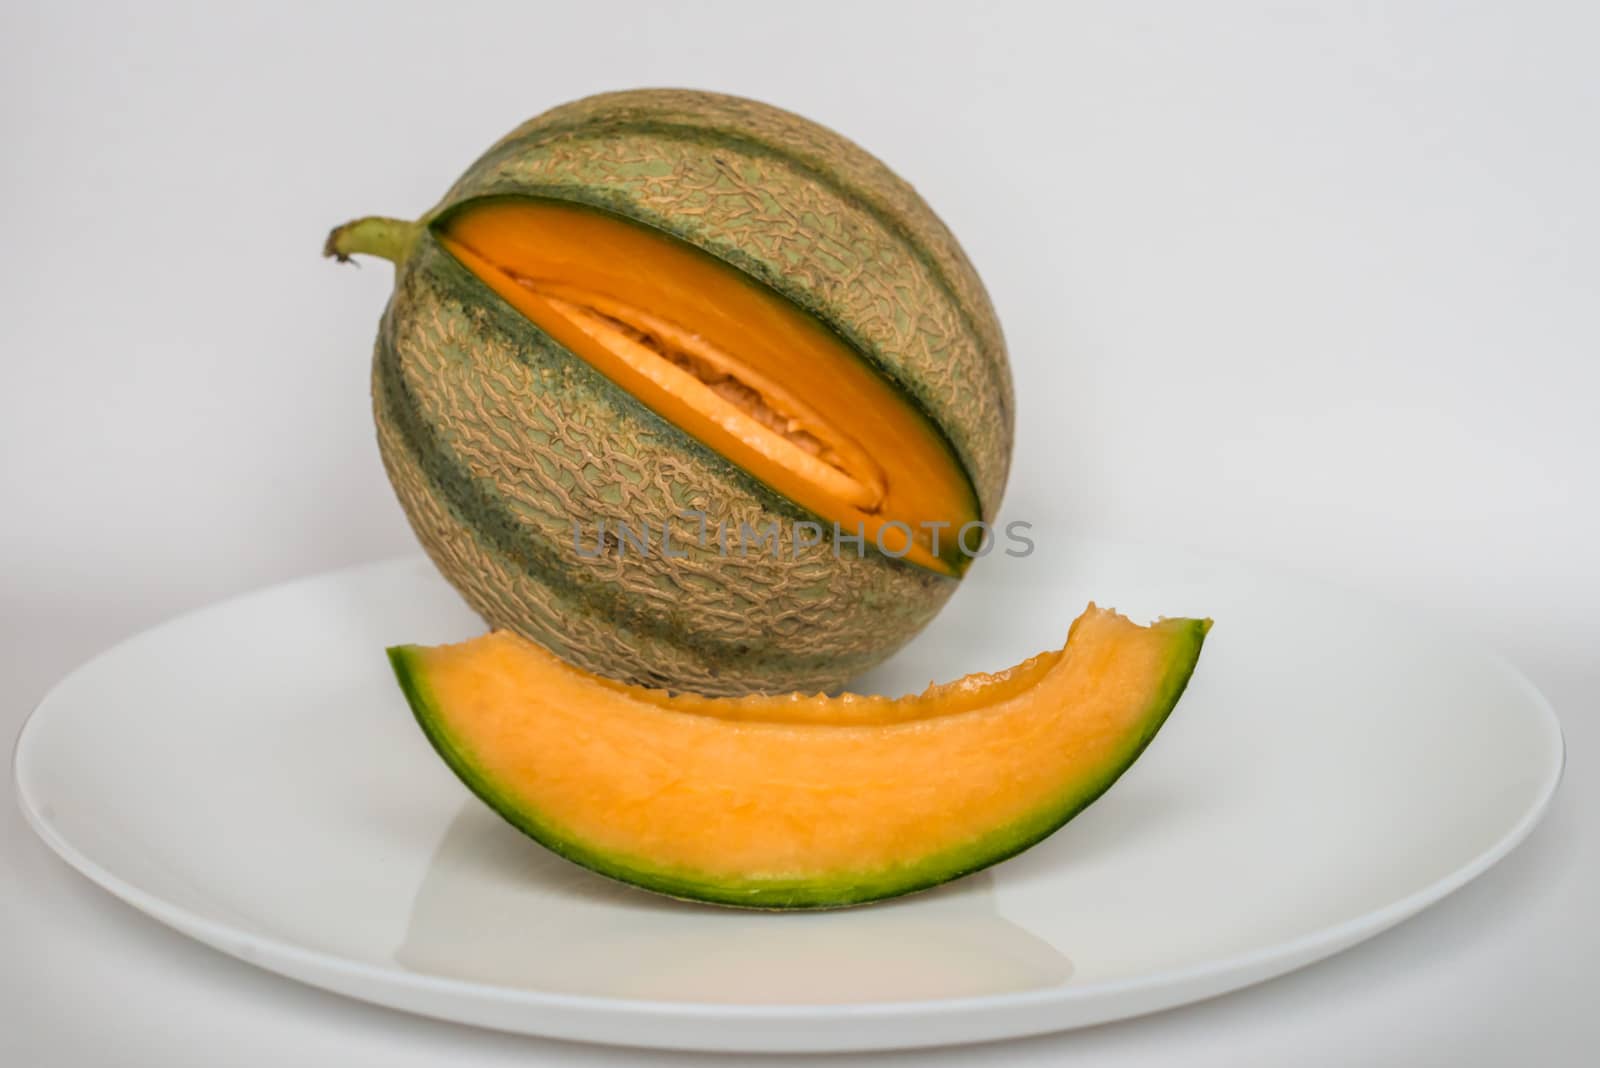 ripe melon with slice on white background by okskukuruza